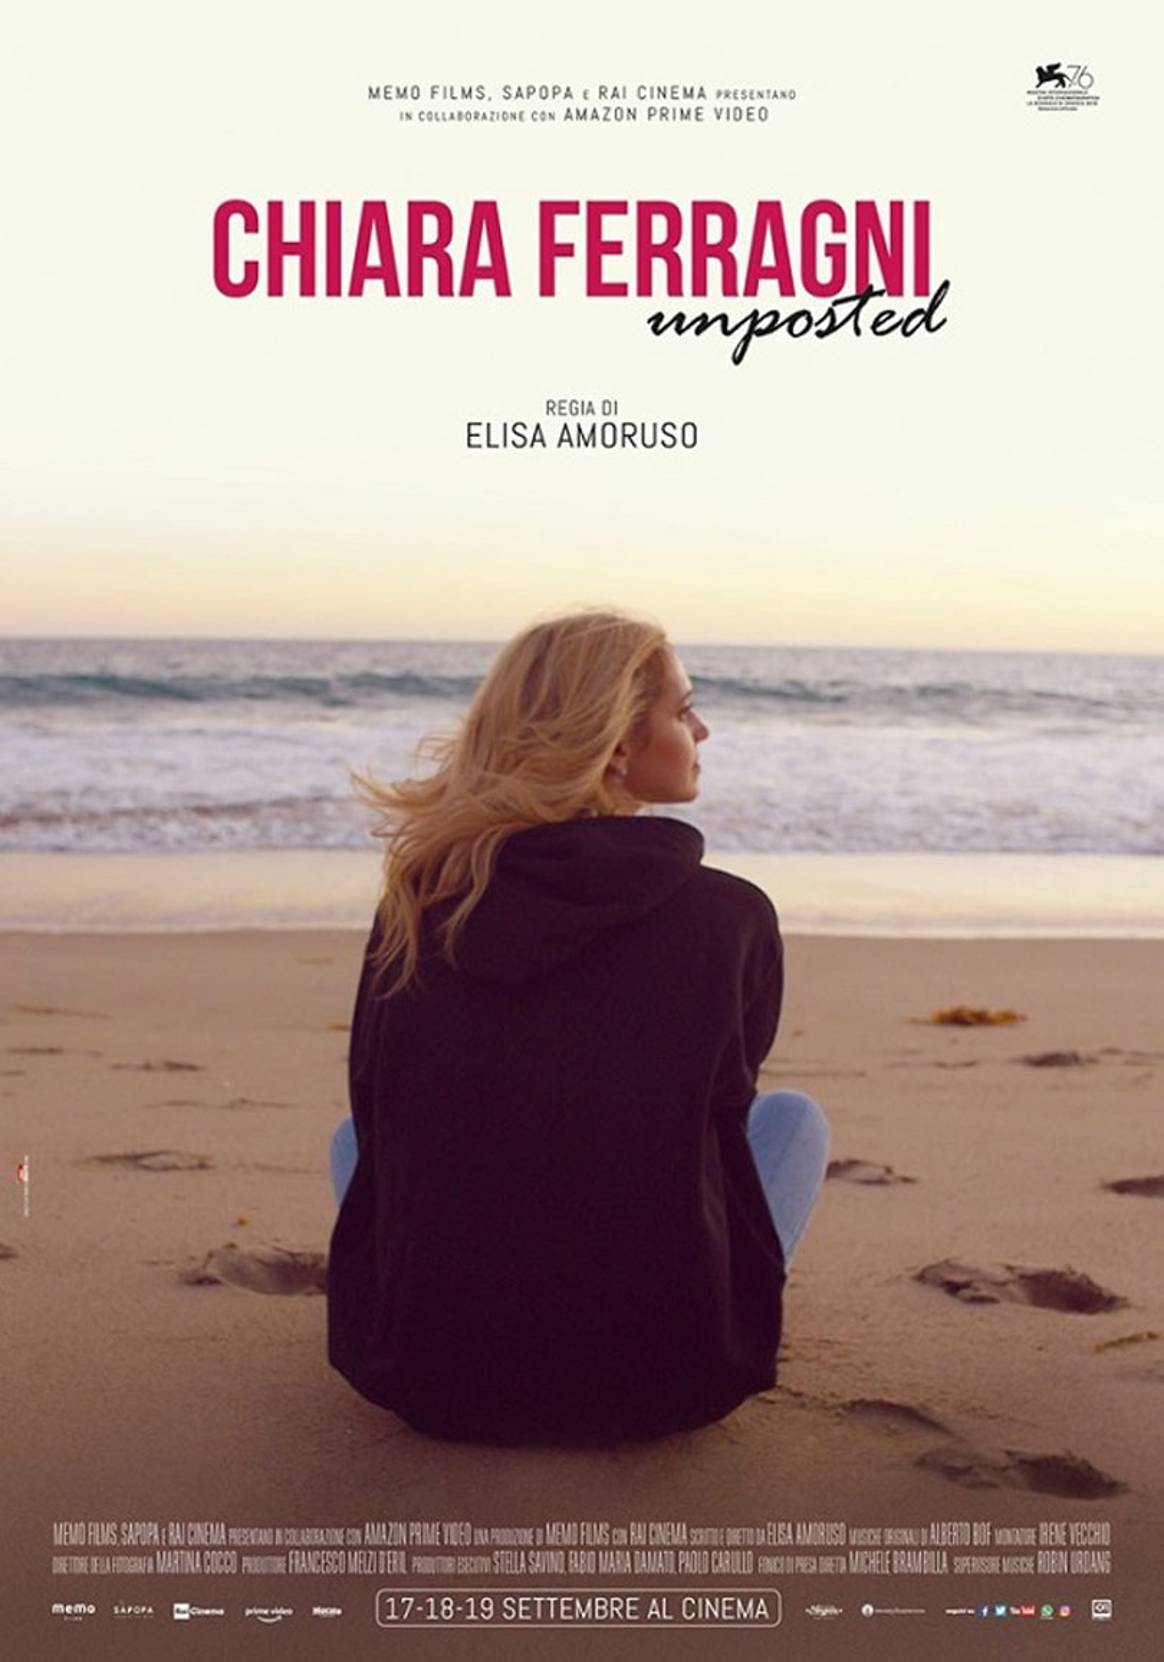 Chiara Ferragni - Unposted debutta il 17 settembre